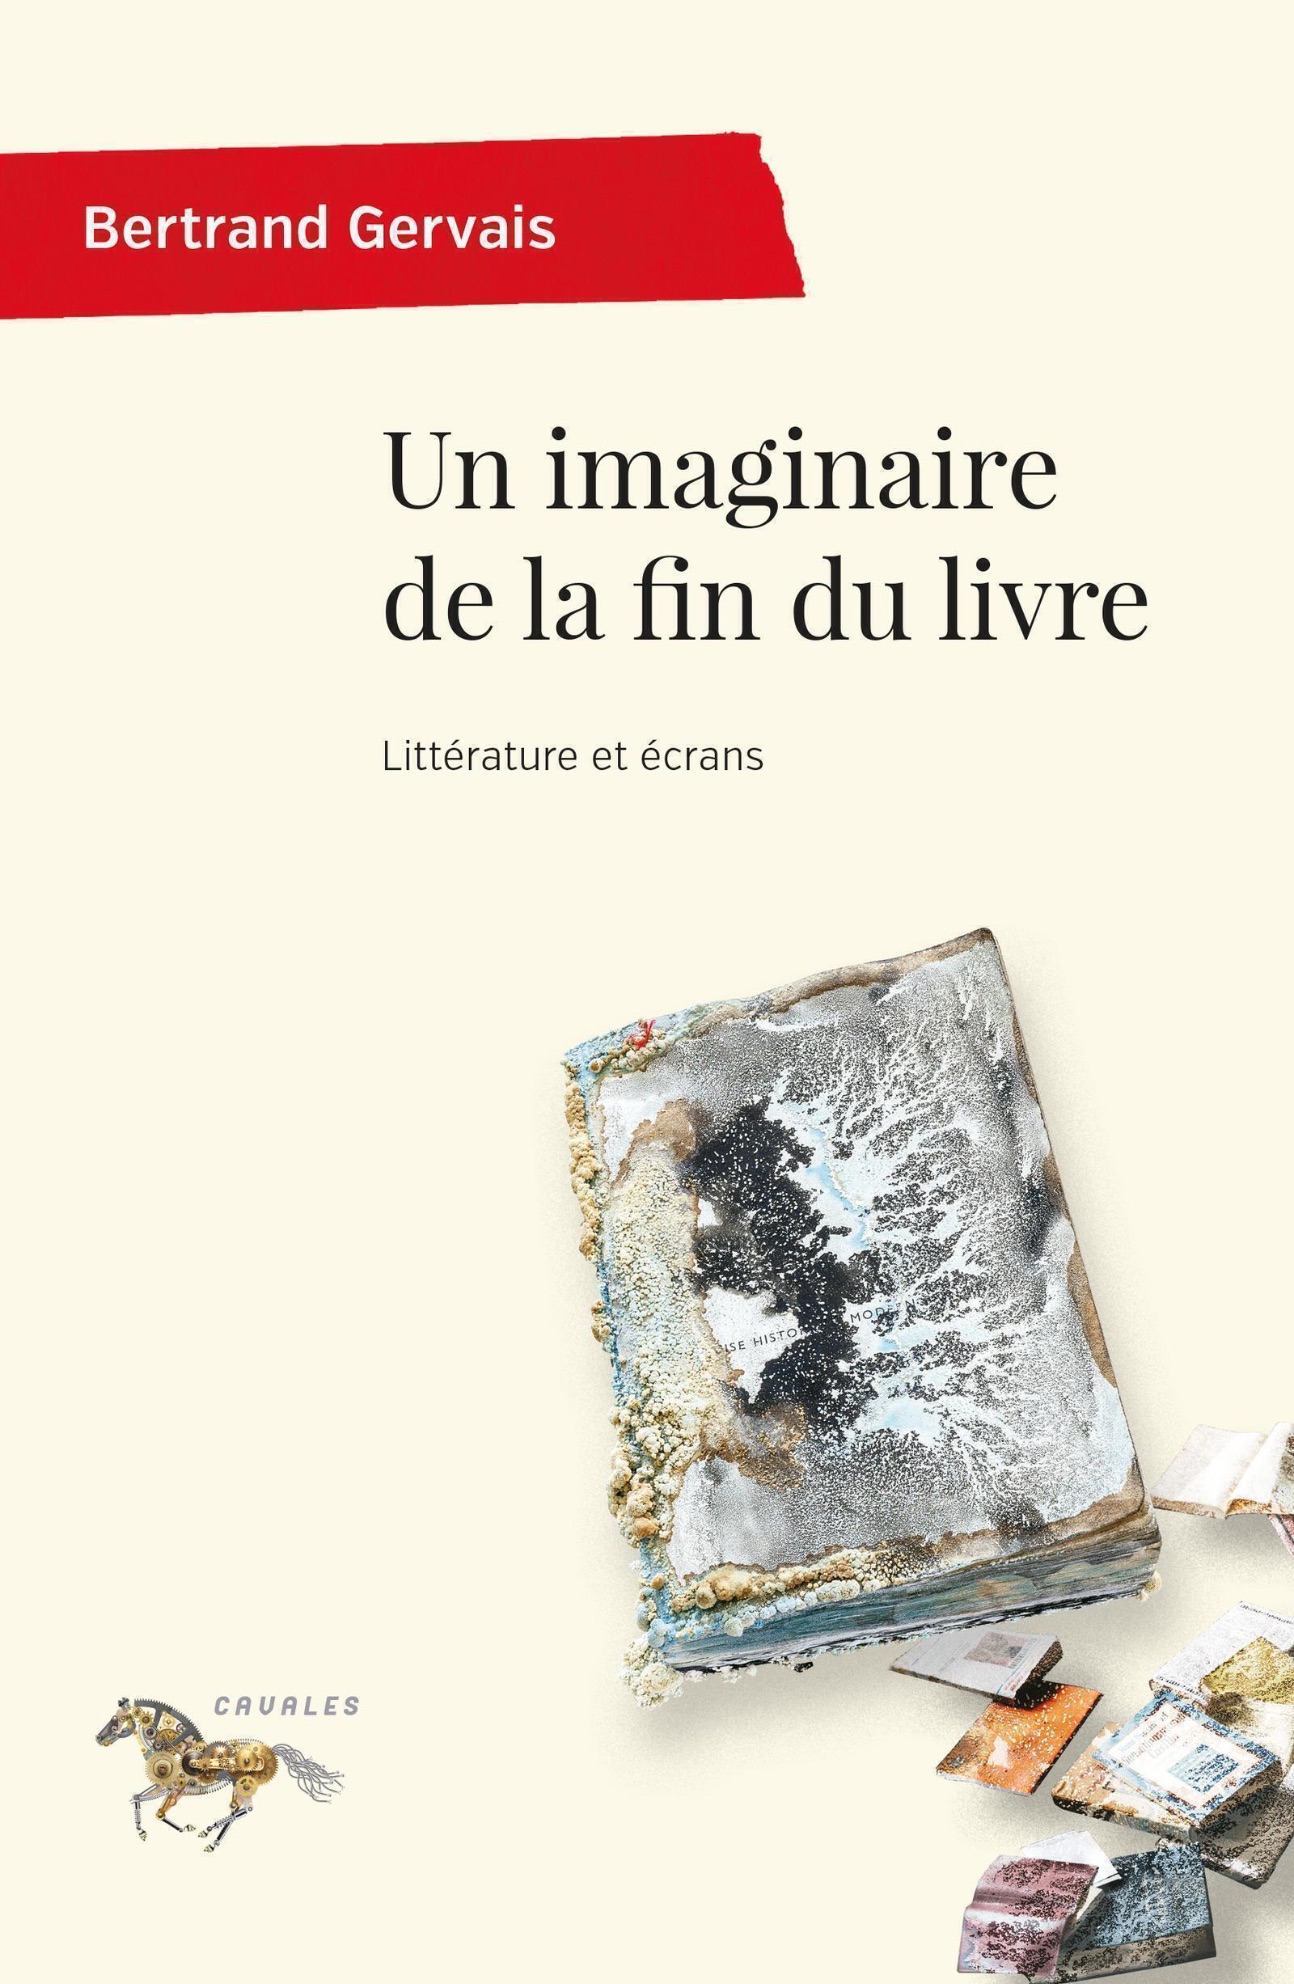 Bertrand Gervais, Un imaginaire de la fin du livre. Littérature et écrans